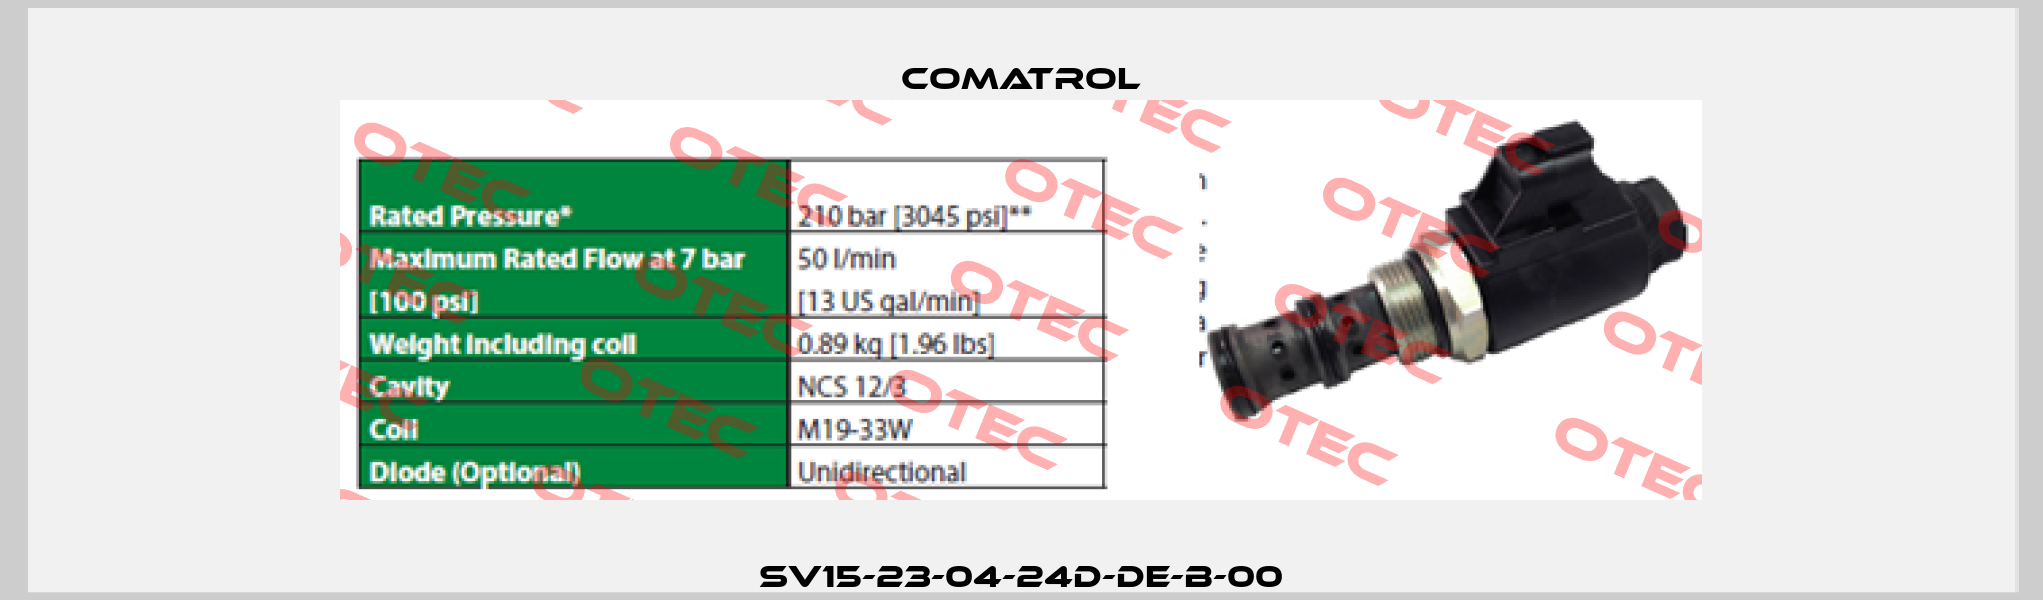 SV15-23-04-24D-DE-B-00 Comatrol